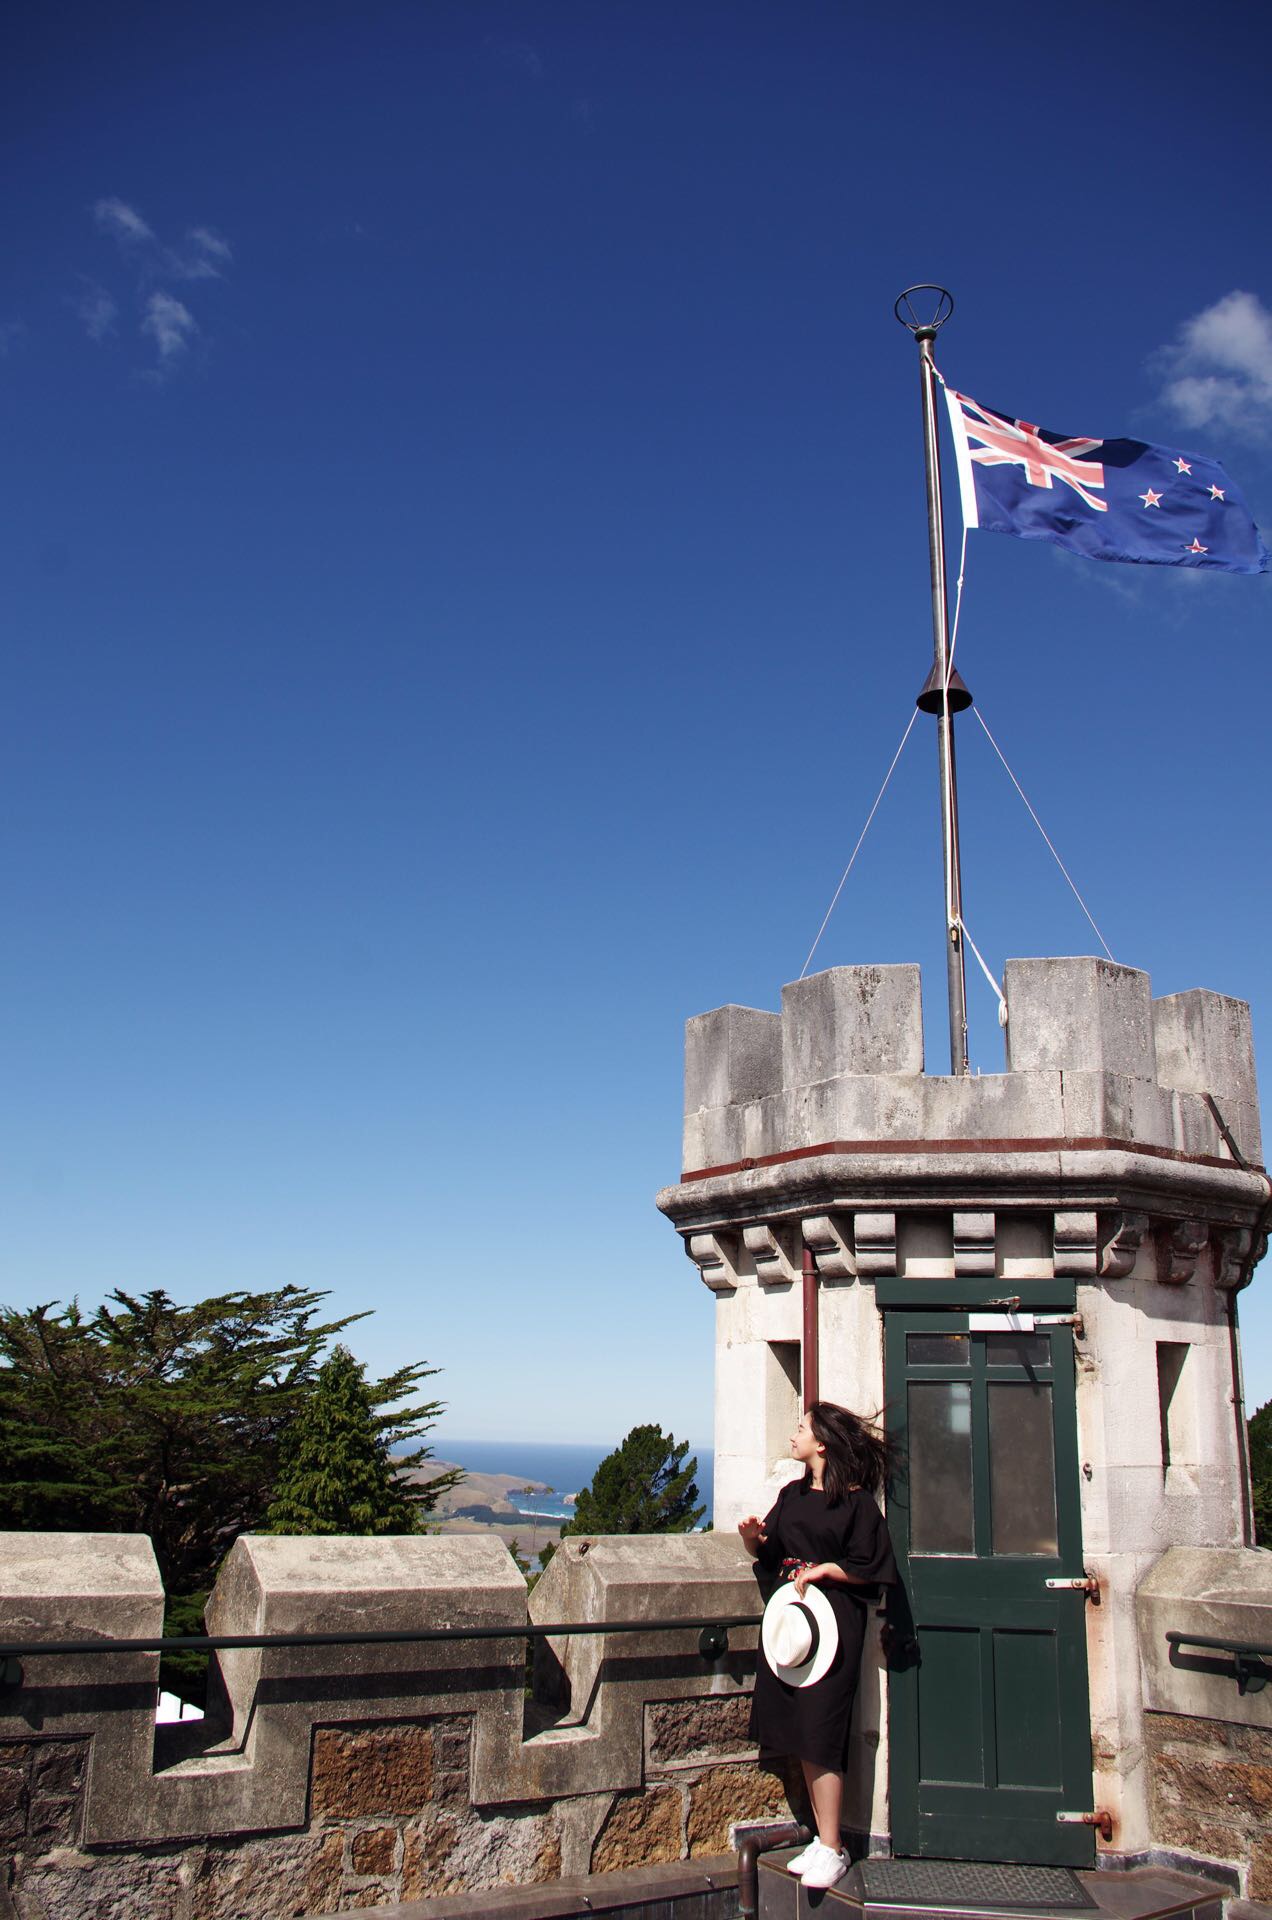 带着盯盯拍去旅行，17天自驾新西兰南北岛！